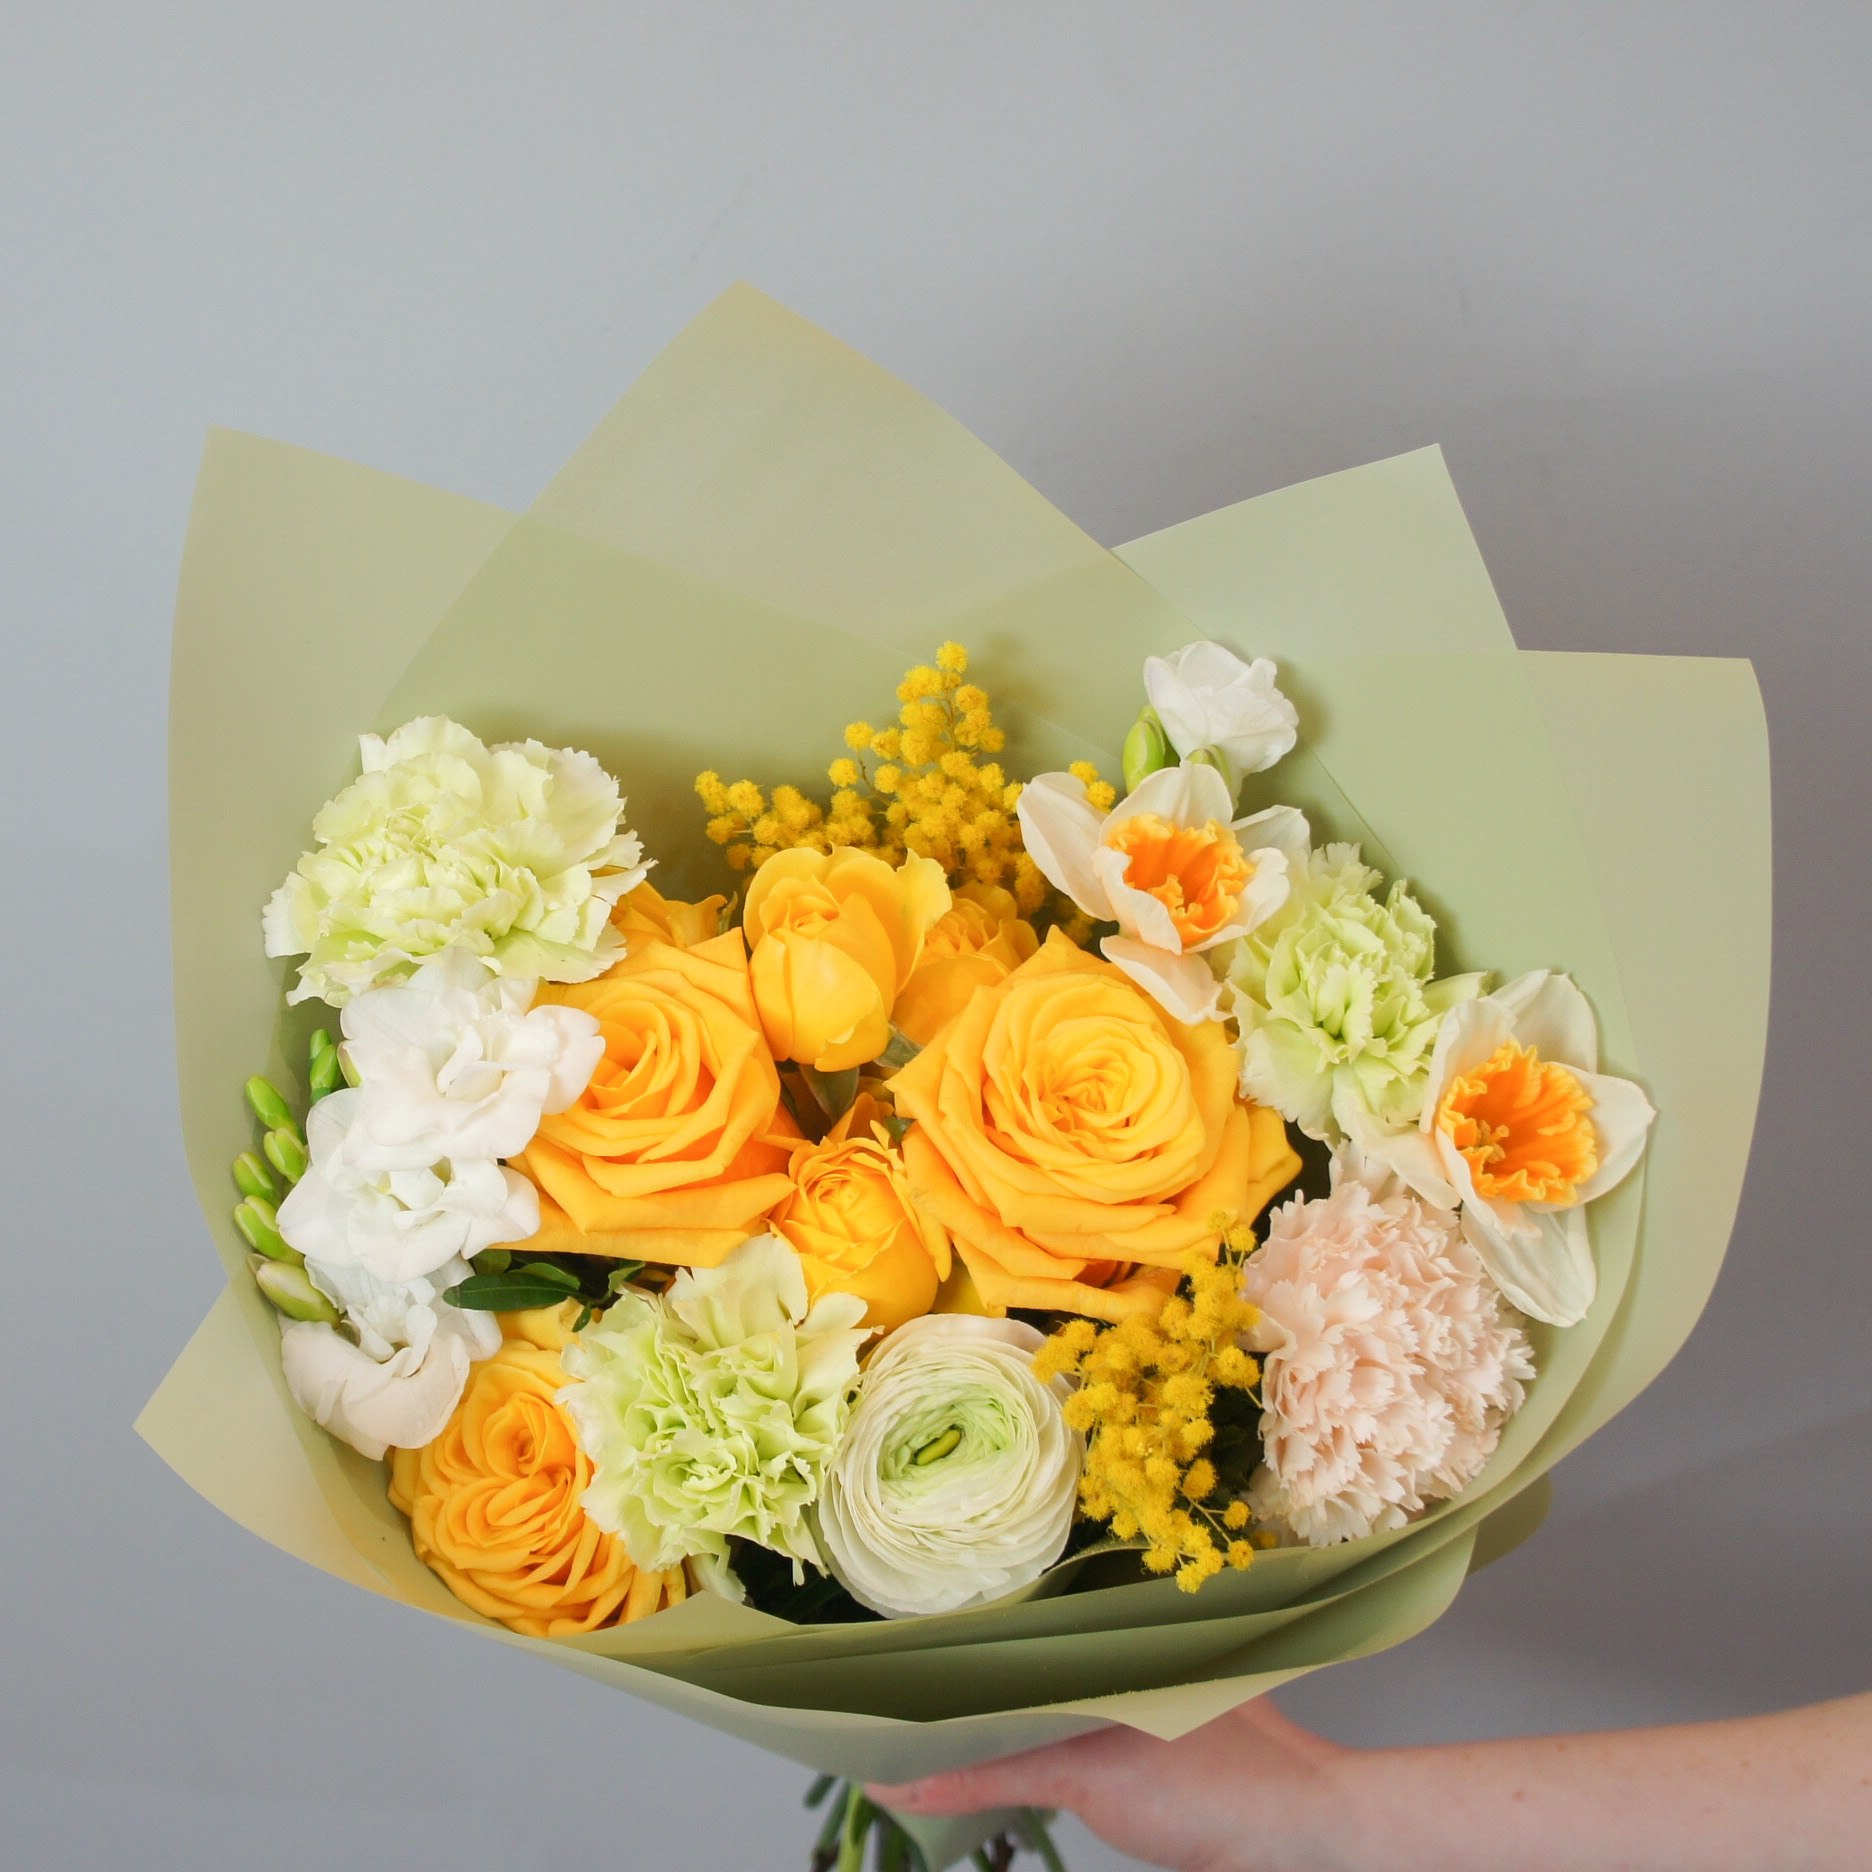 Купить букет / цветы Кира 2 в Москве с доставкой по отличной цене